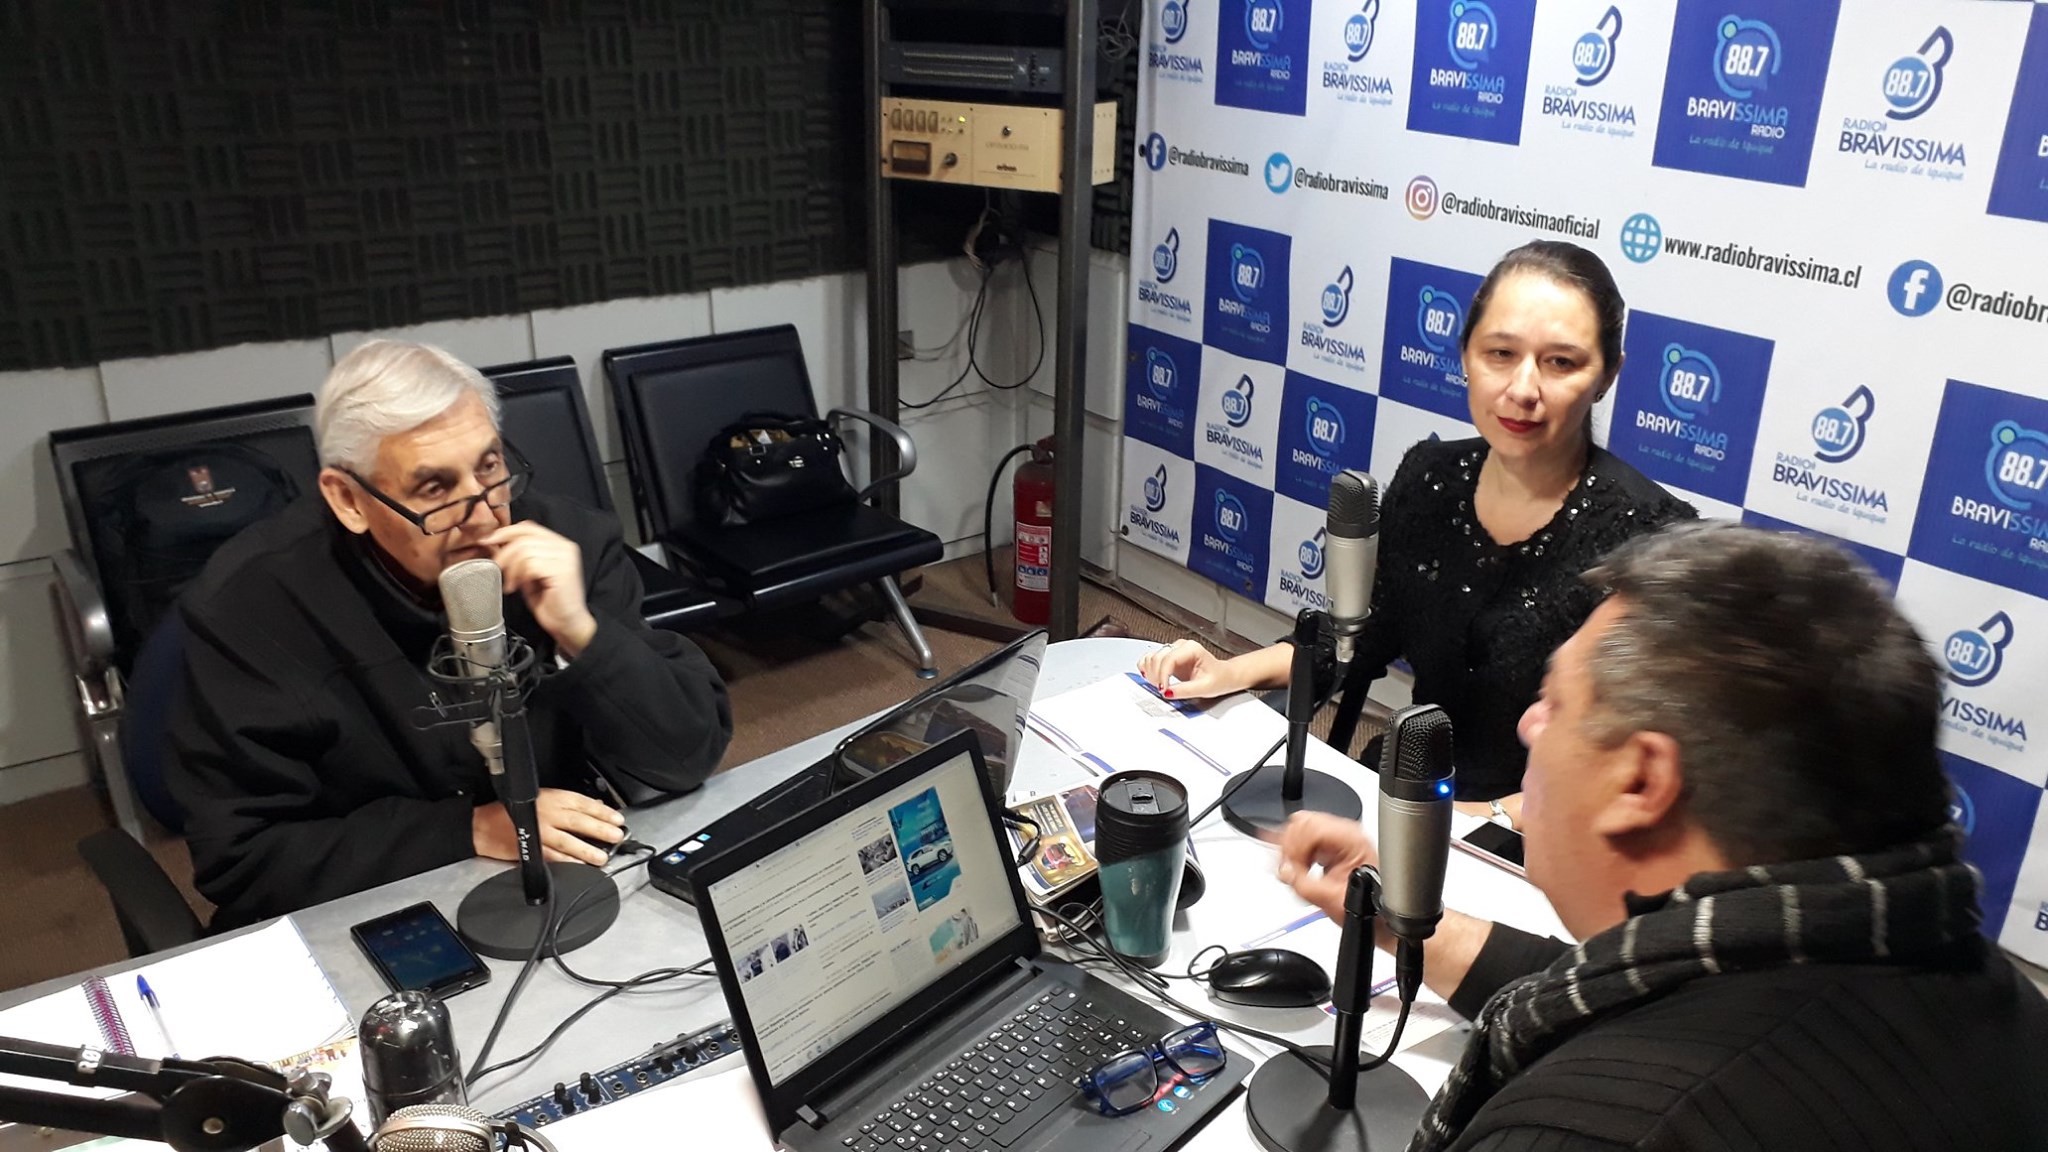 CAVI Iquique presente en Radio Bravissima de Iquique